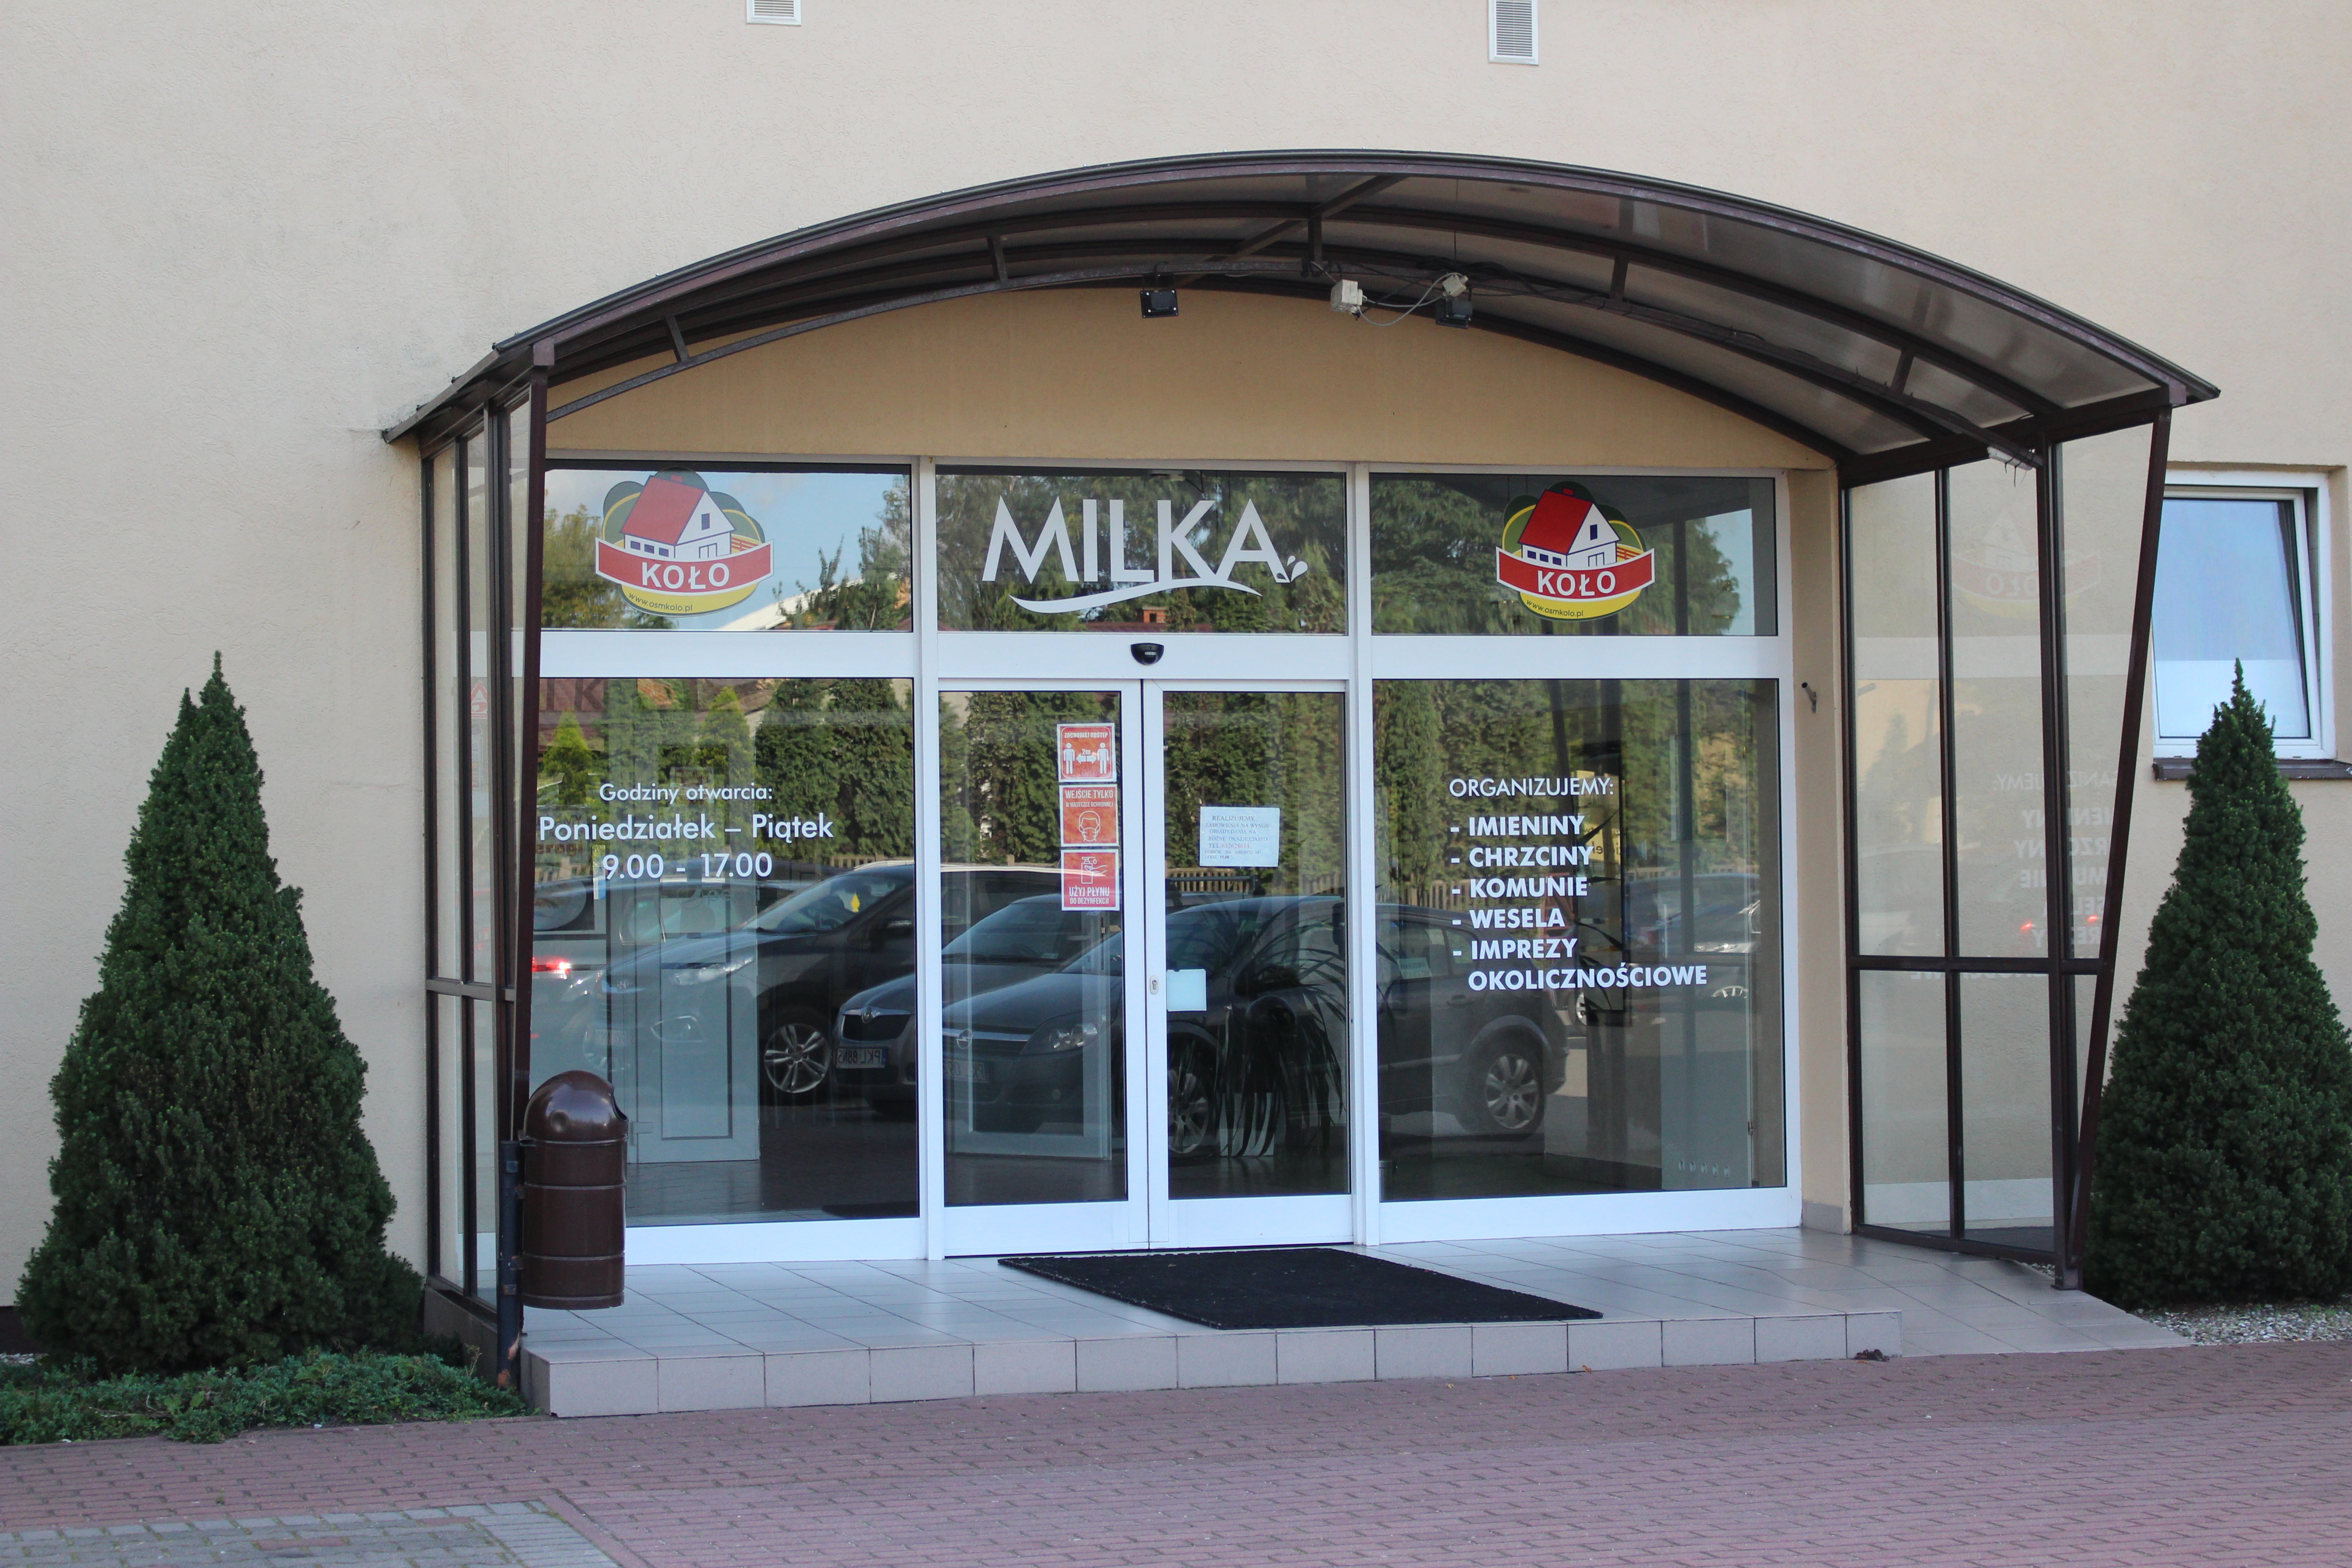 Zdjęcie przedstawia wejście do budynku restauracji MILKA.